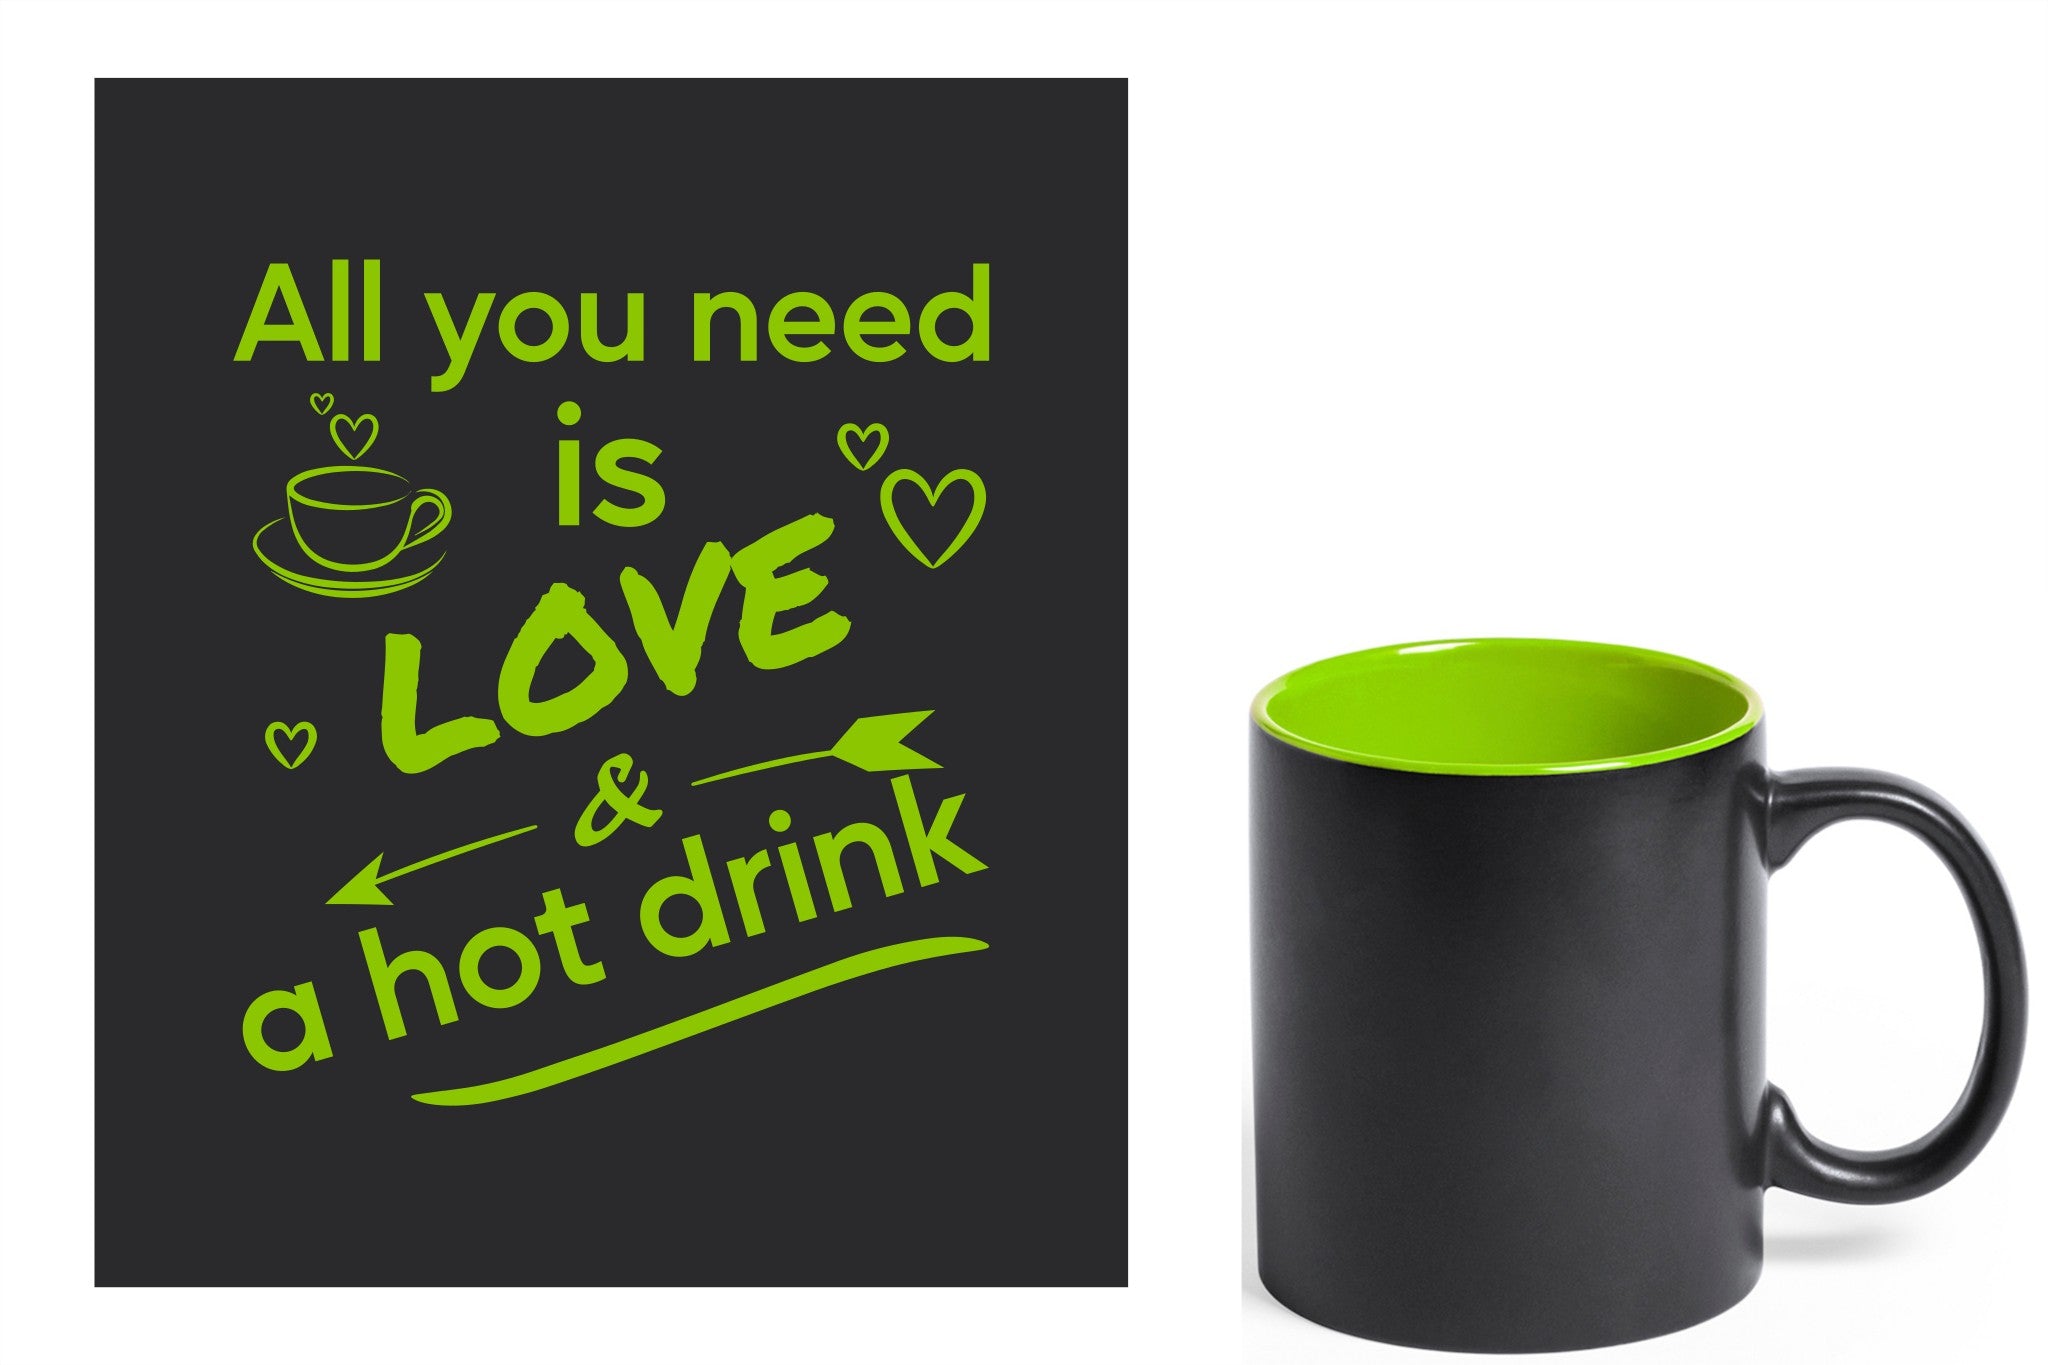 zwarte keramische mok met groene gravure  'All you need is love & a hot drink'.